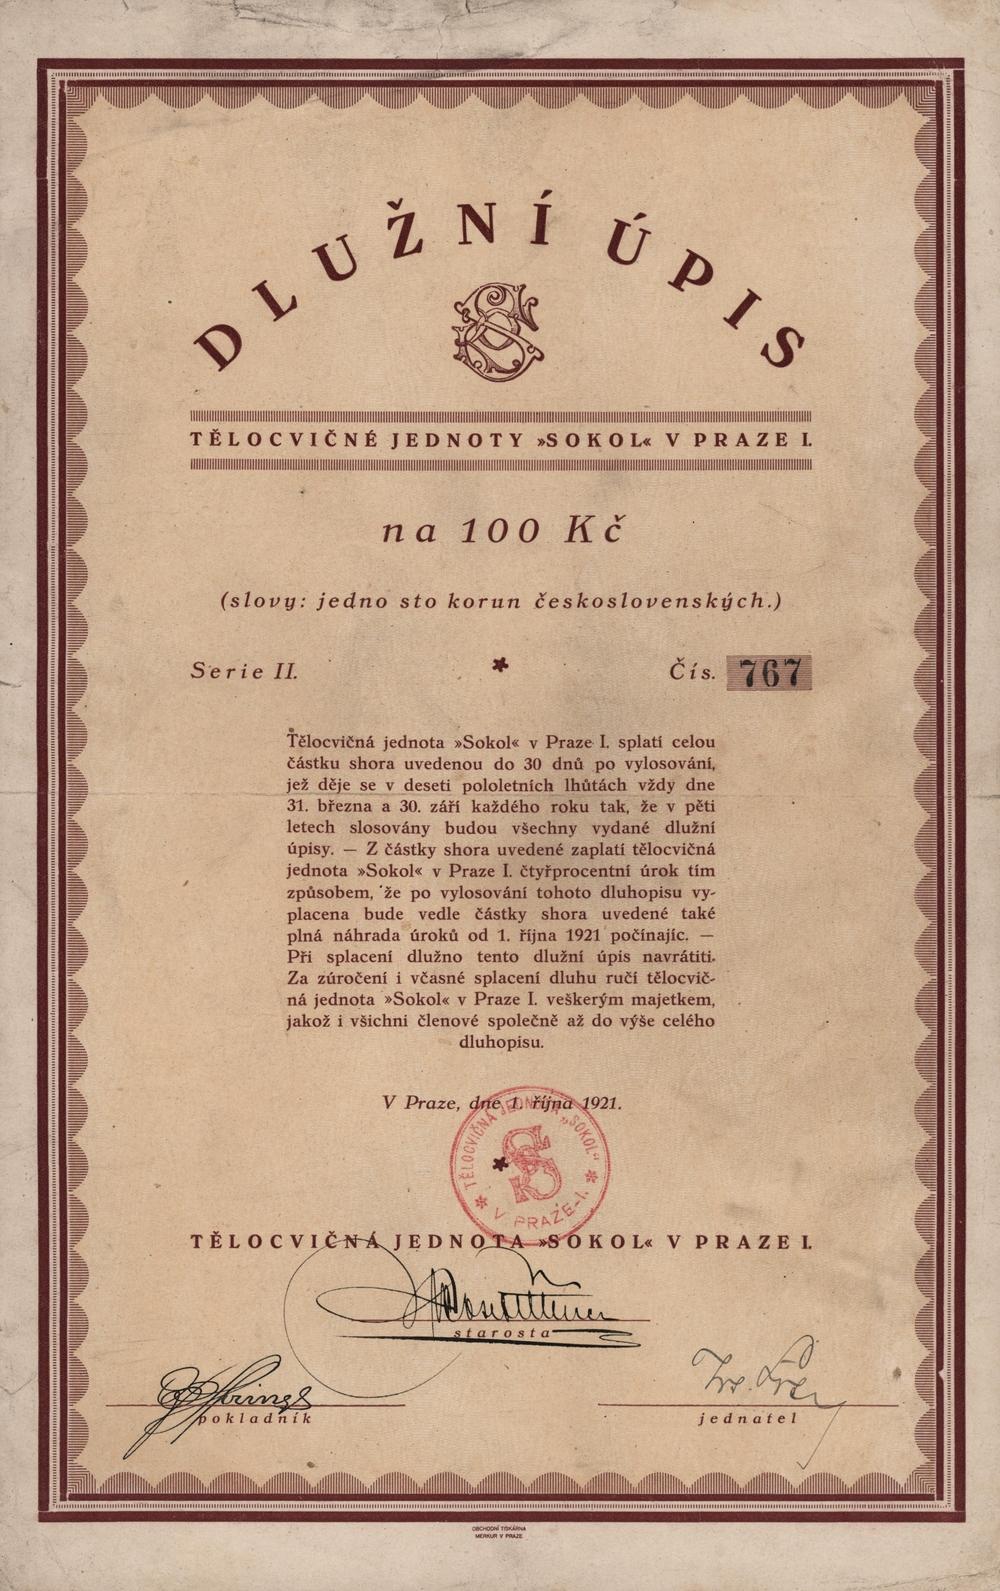 Dlužní úpis Tělocvičná jednota SOKOL v Praze I., Praha 1921, 100 Kč